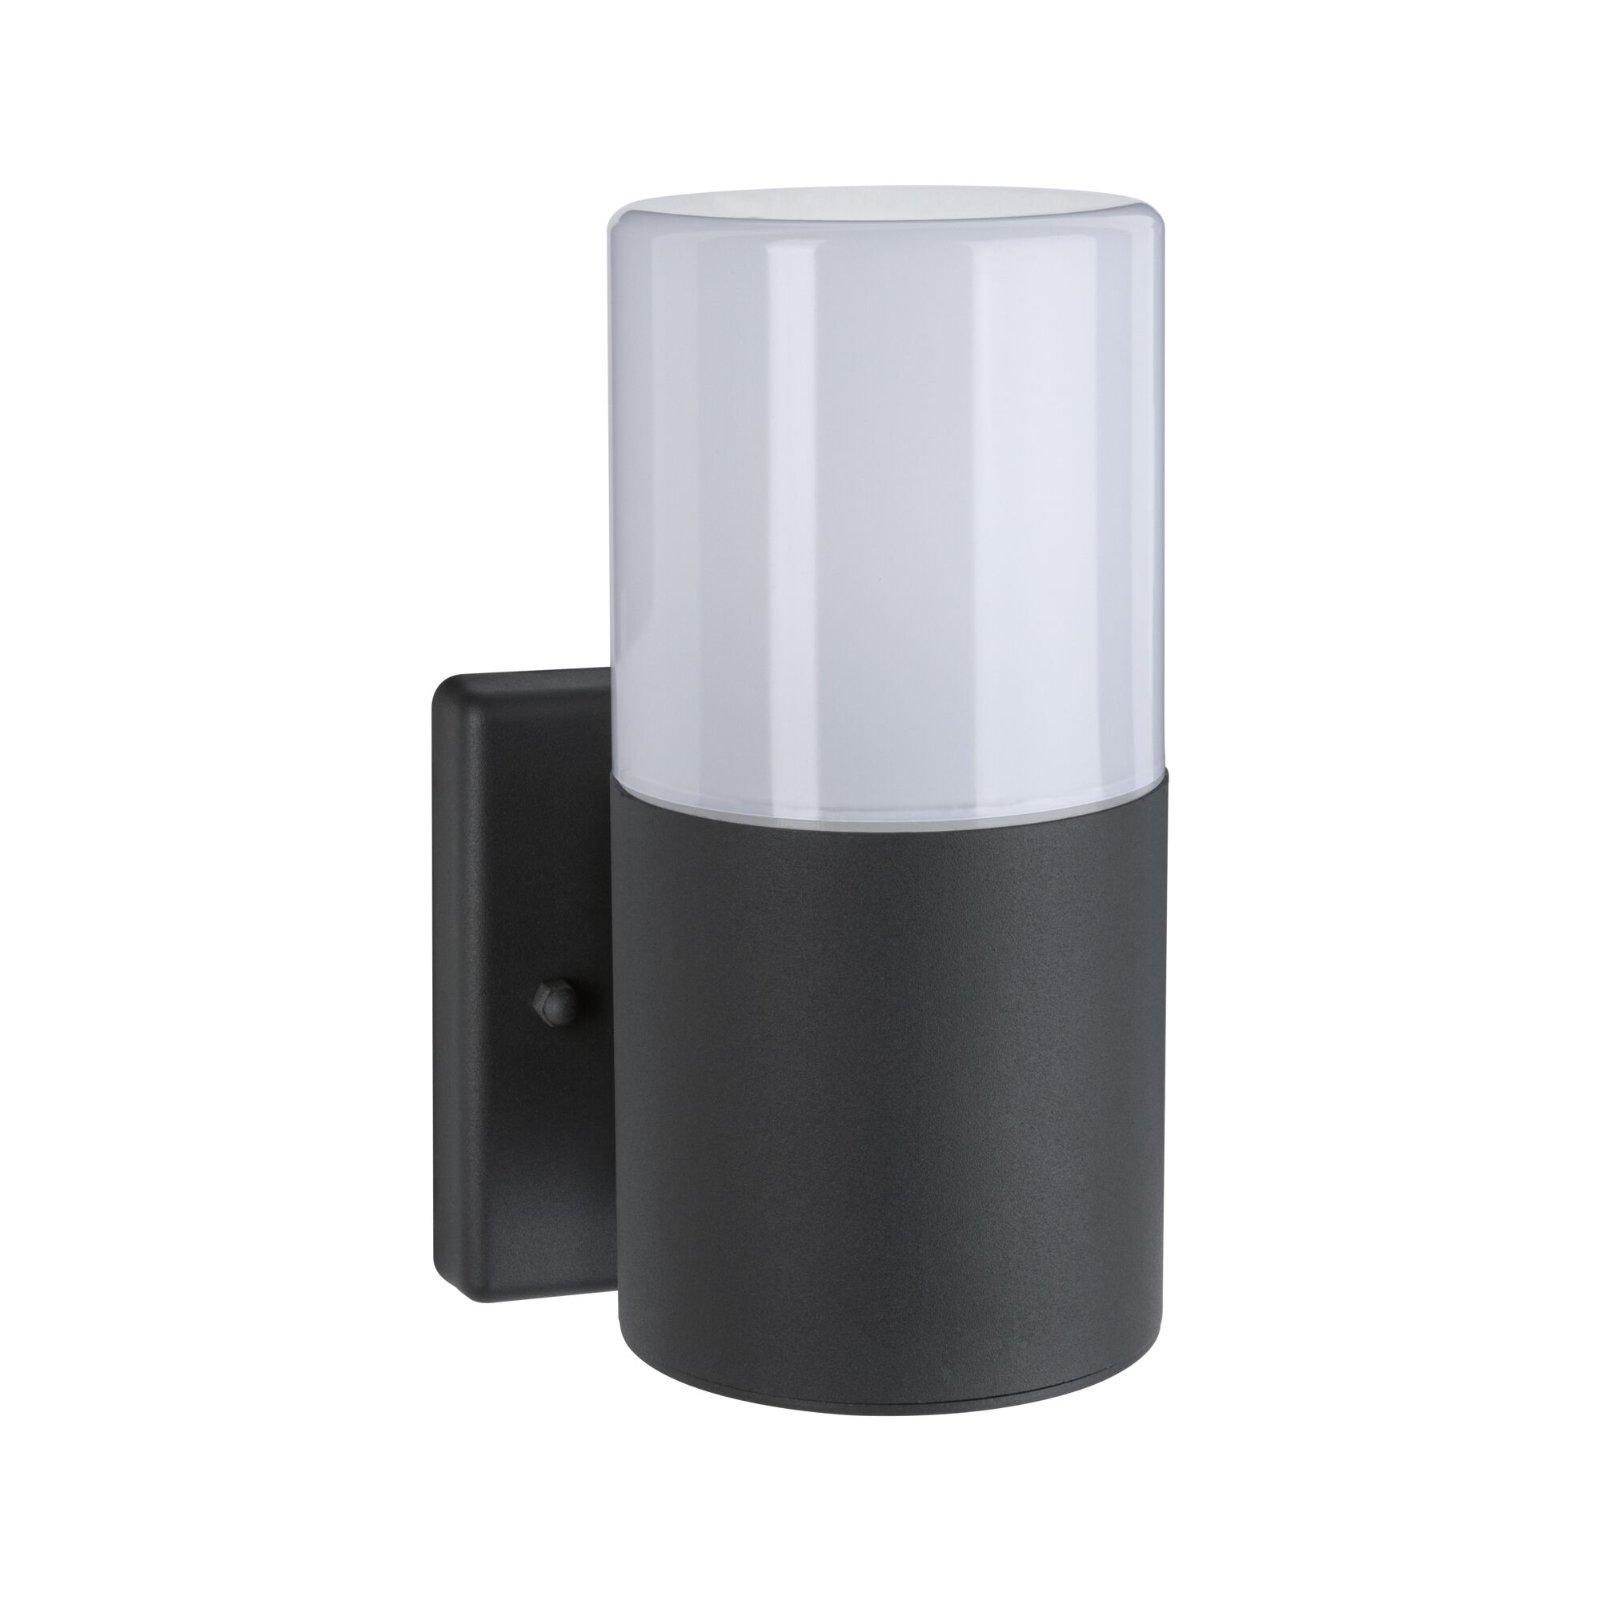 Venkovní nástěnné svítidlo Tubs pohybové čidlo IP44 kruhové 105x123mm max. 15W 230V šedá mat kov/umělá hmota - PAULMANN